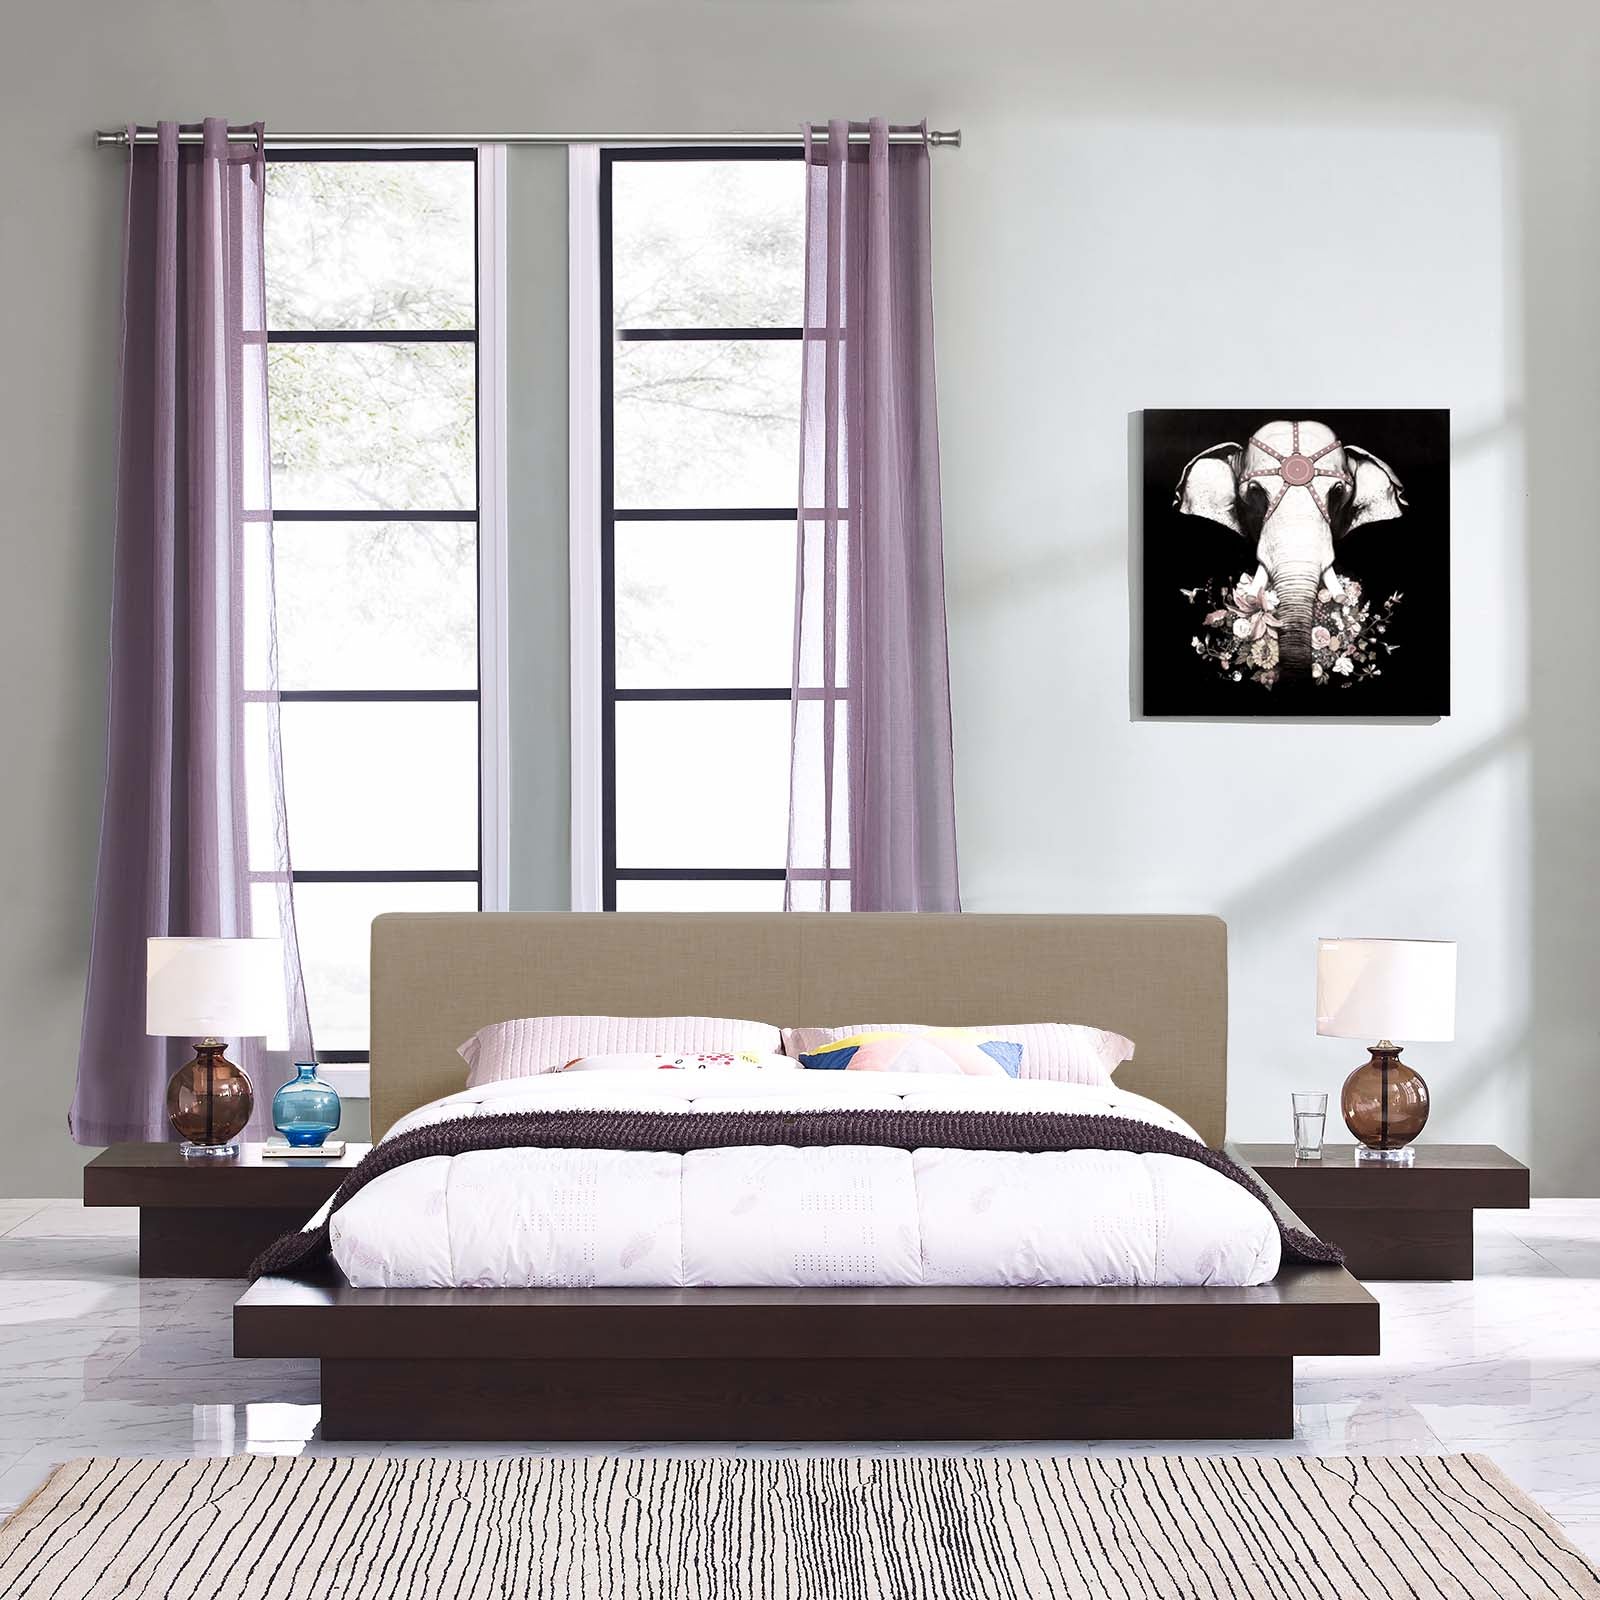 Freja 3 Piece Queen Fabric Bedroom Set